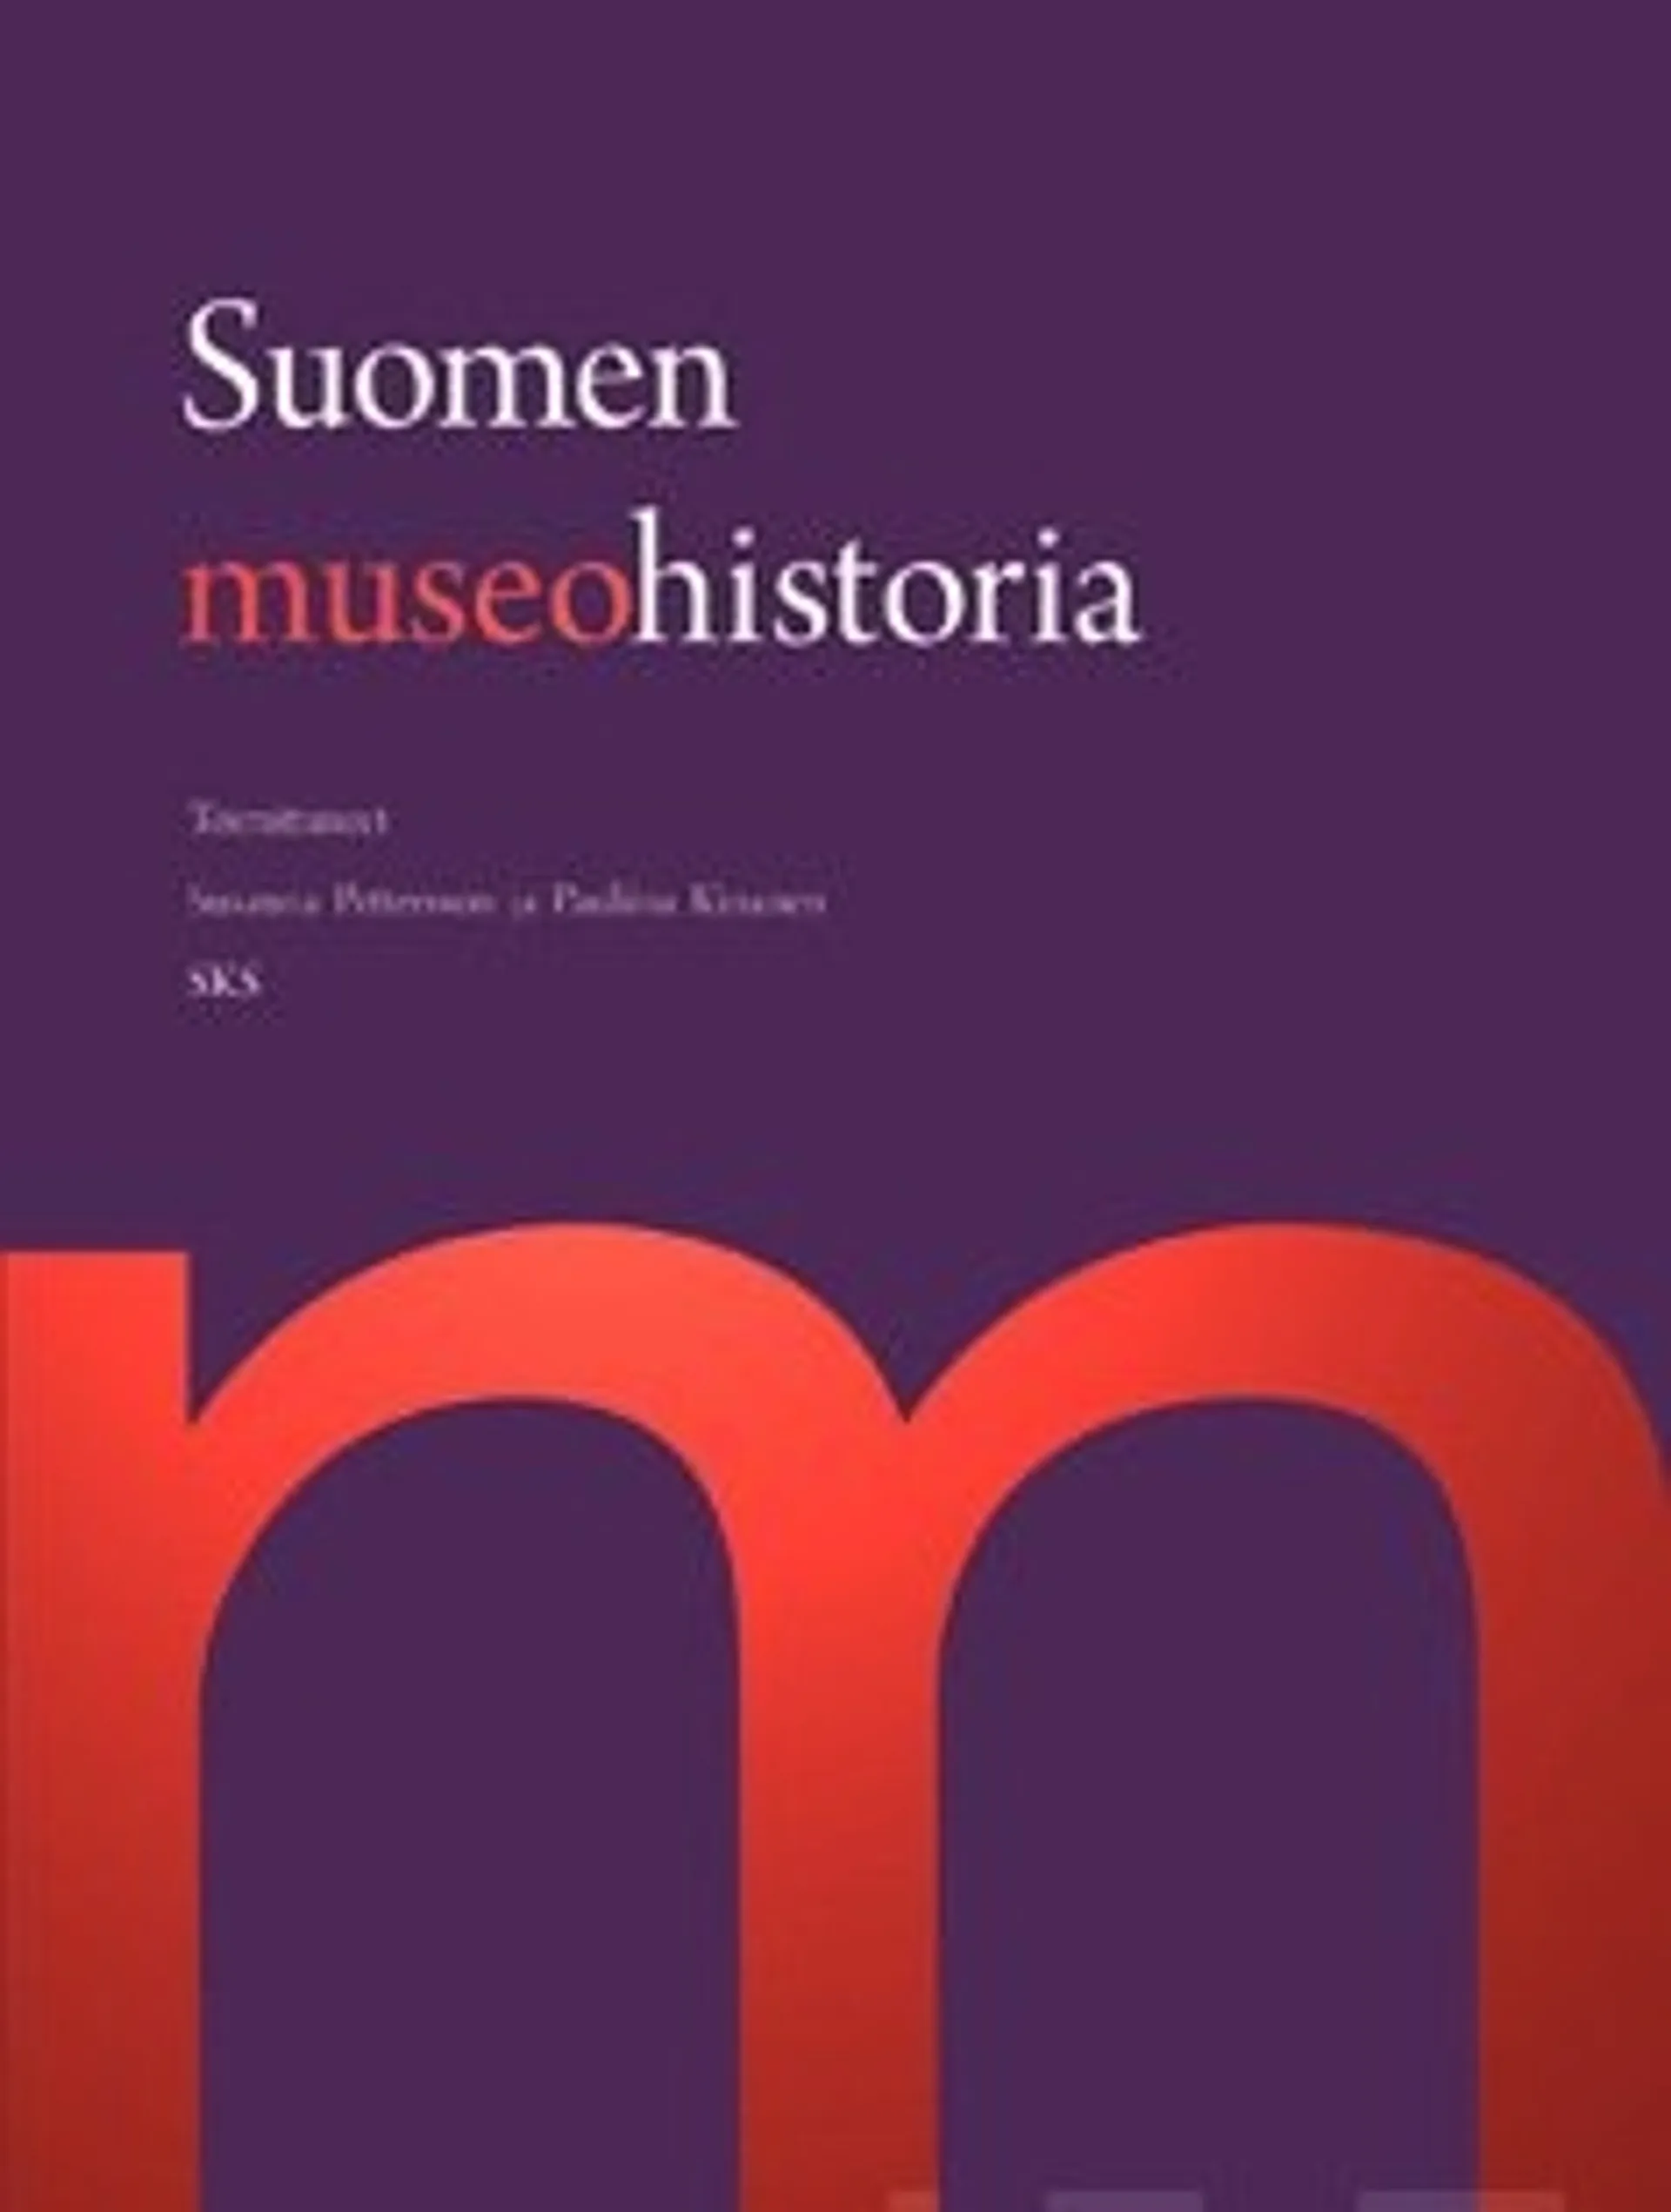 Suomen museohistoria